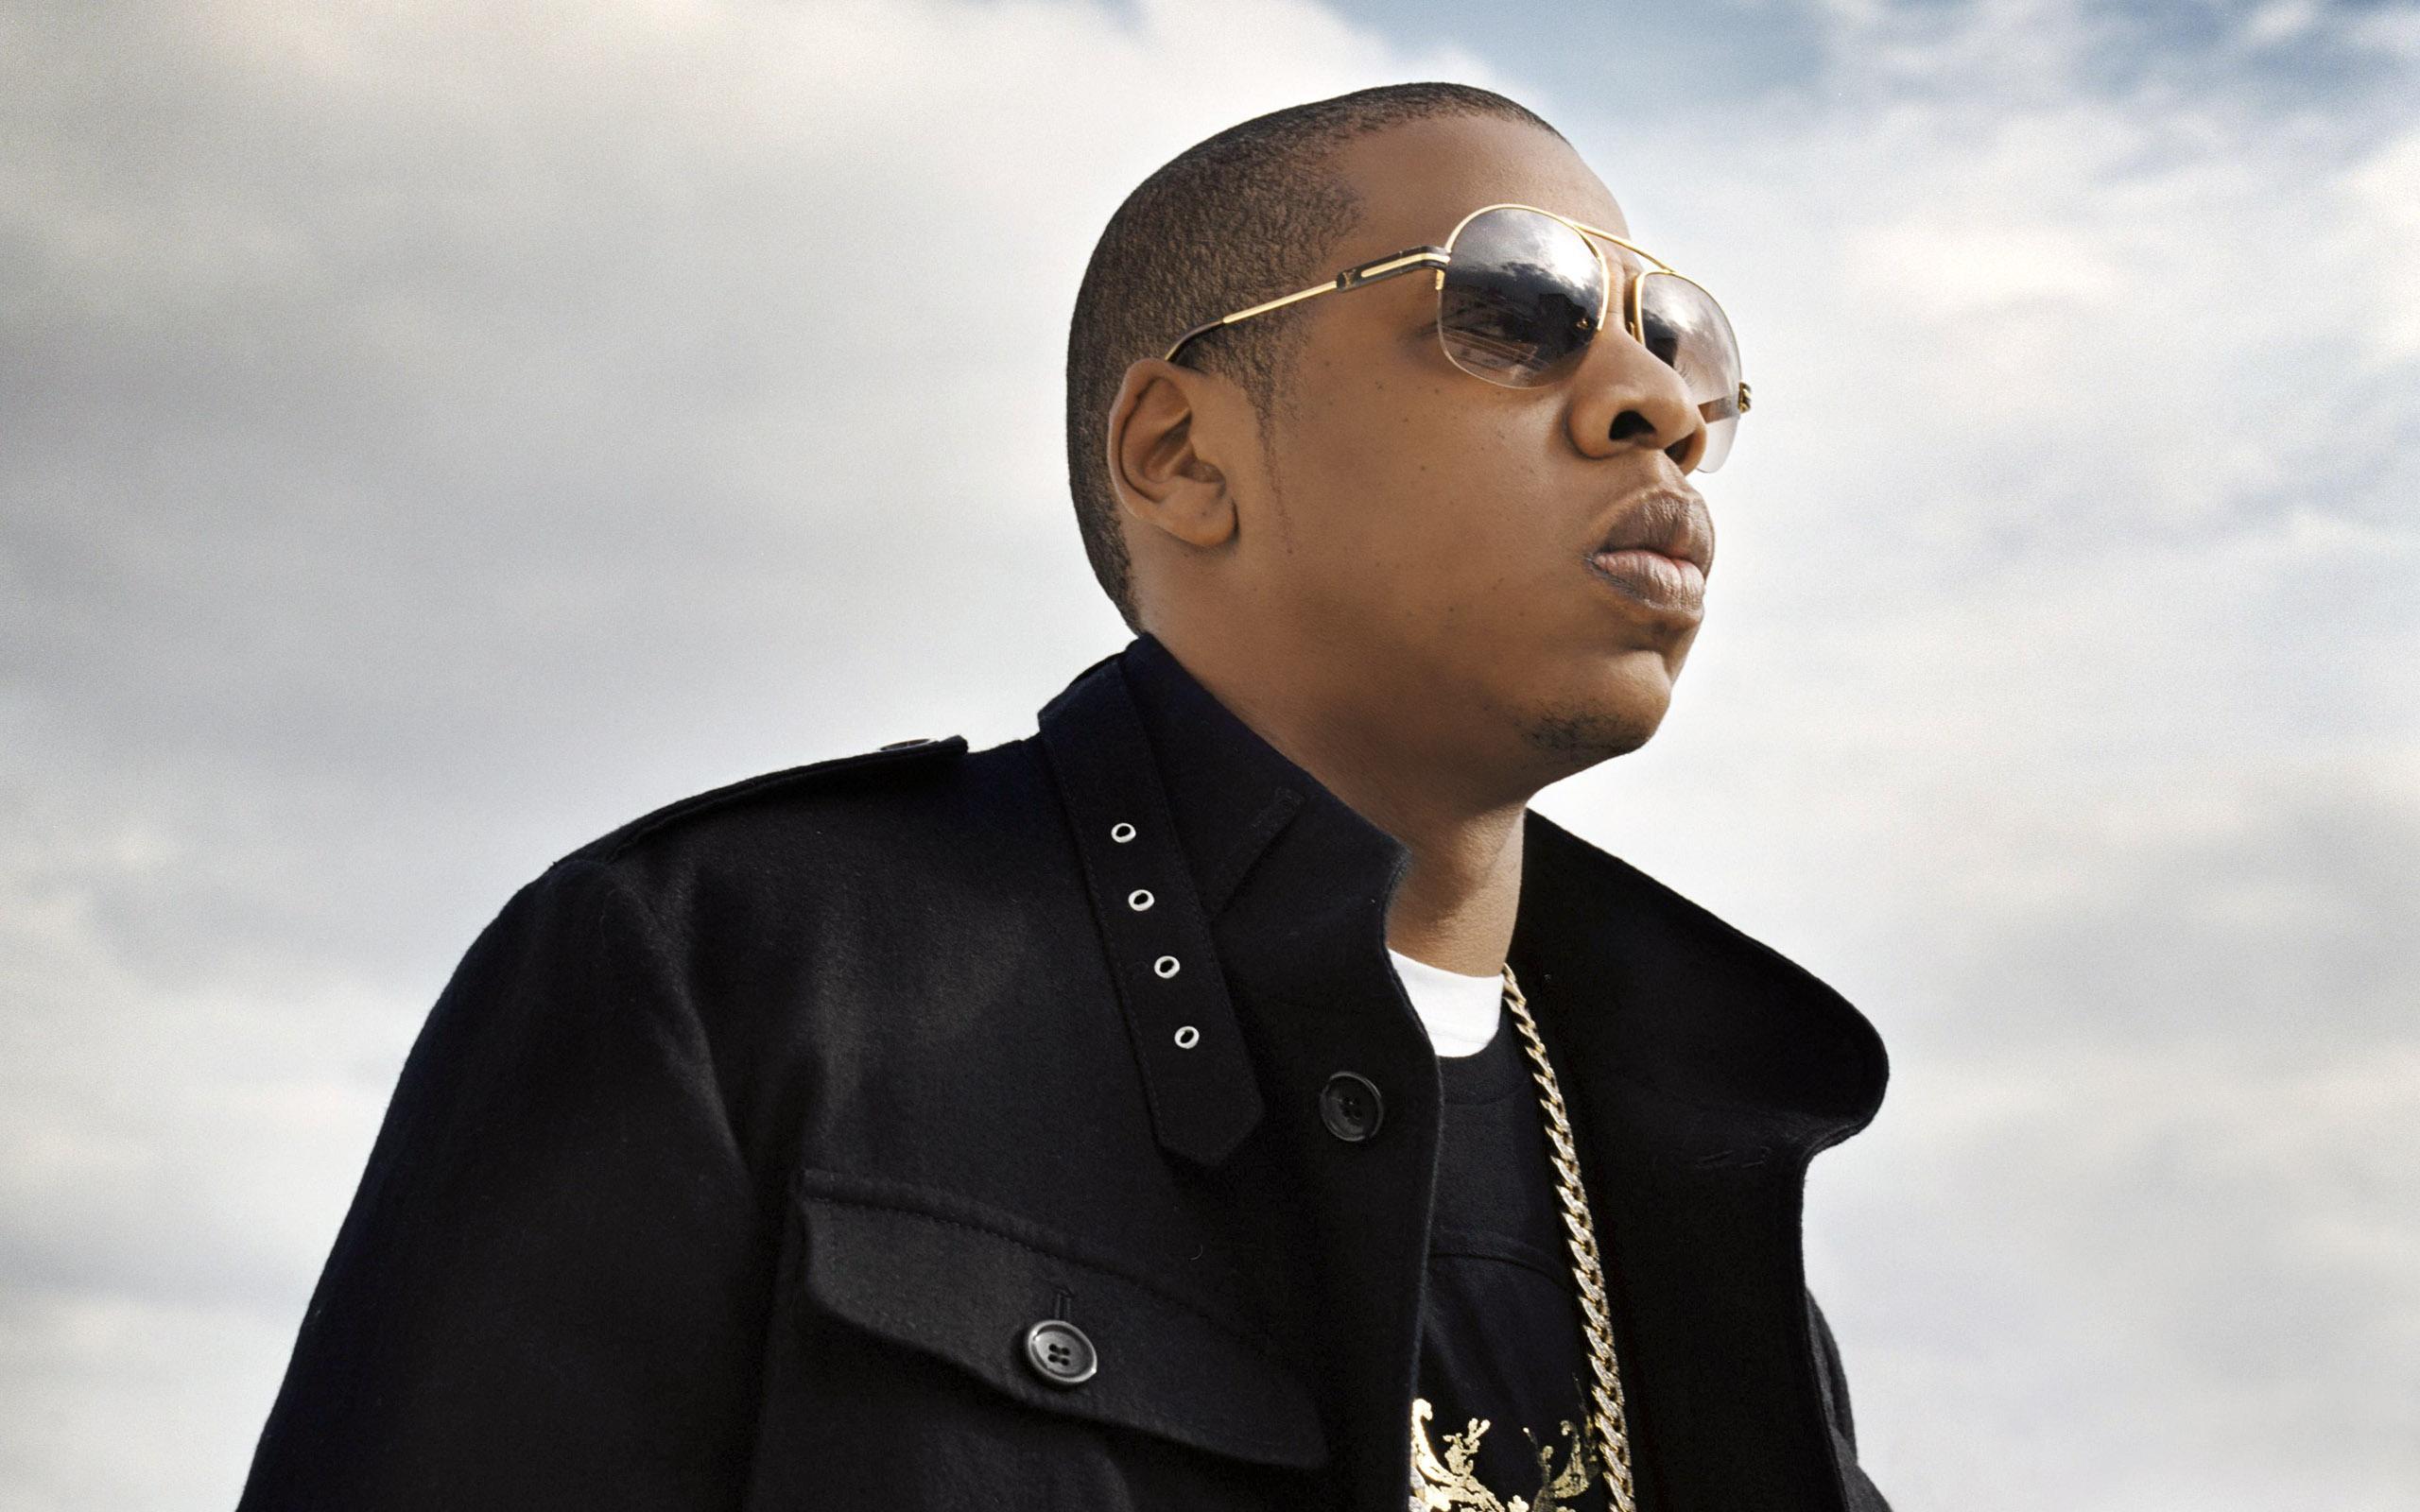 Jay Z HD Rap Wallpaper